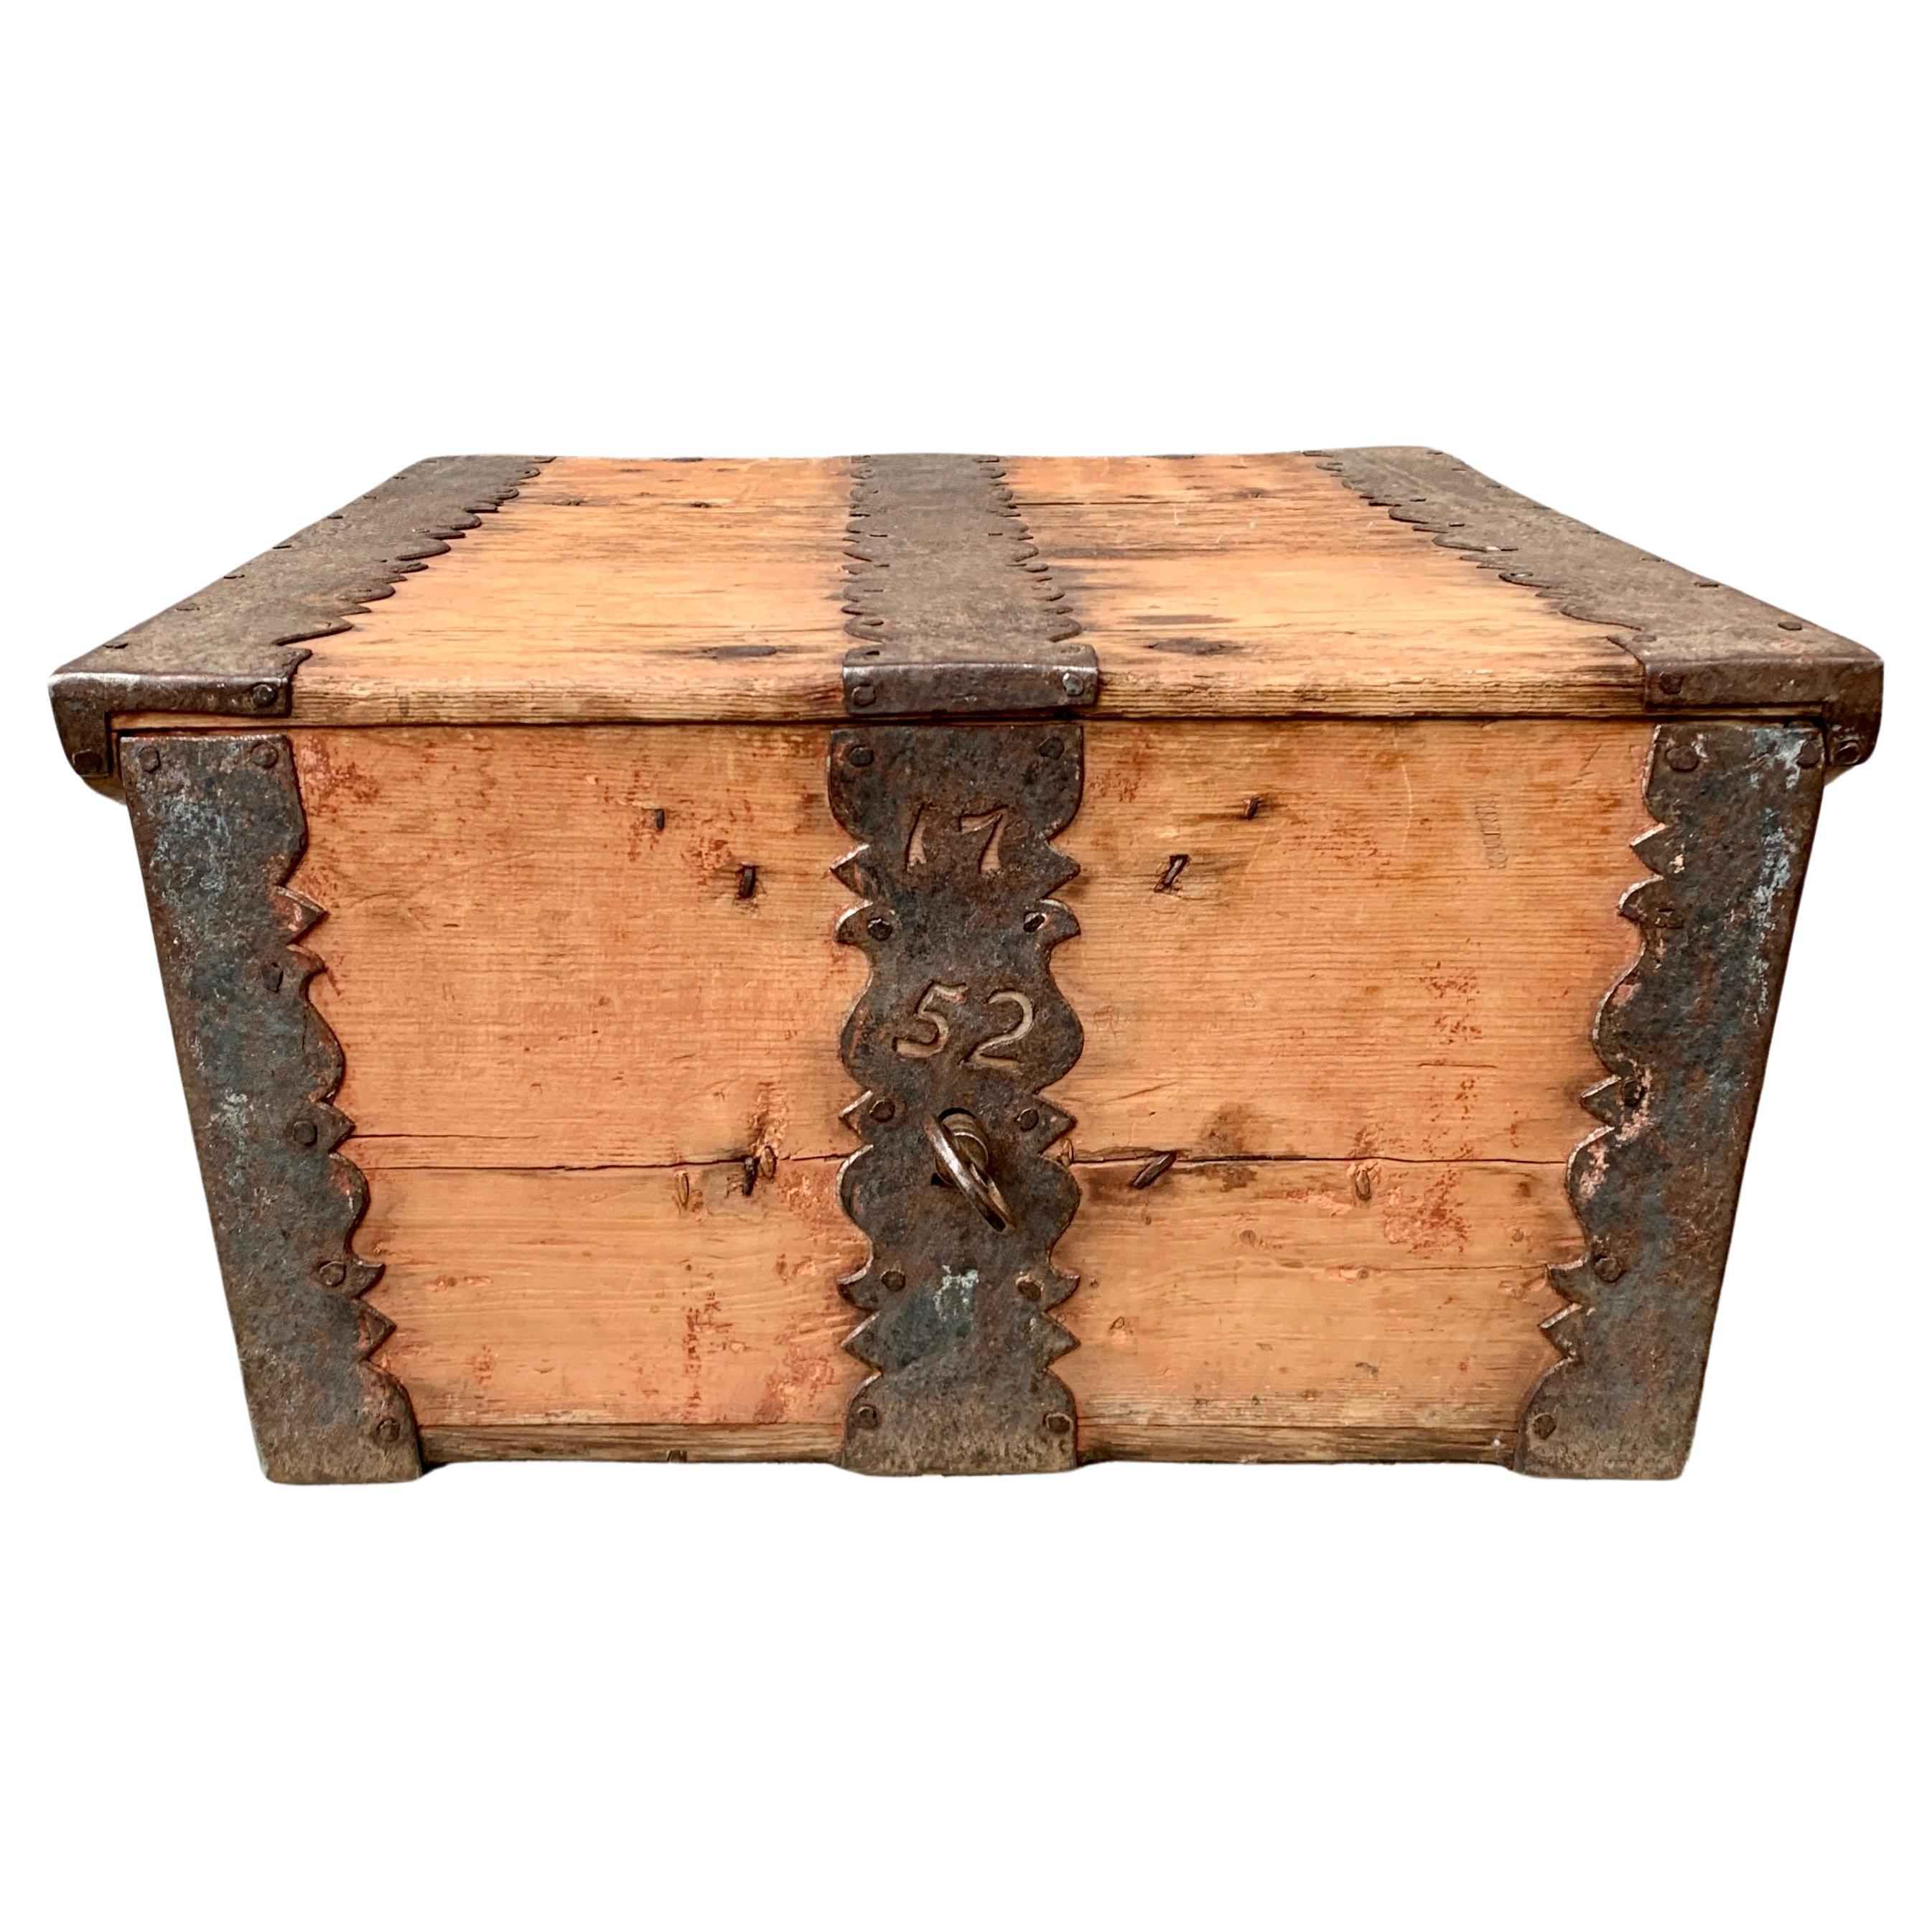 Boîte scandinave en bois du 18ème siècle, datée de 1752